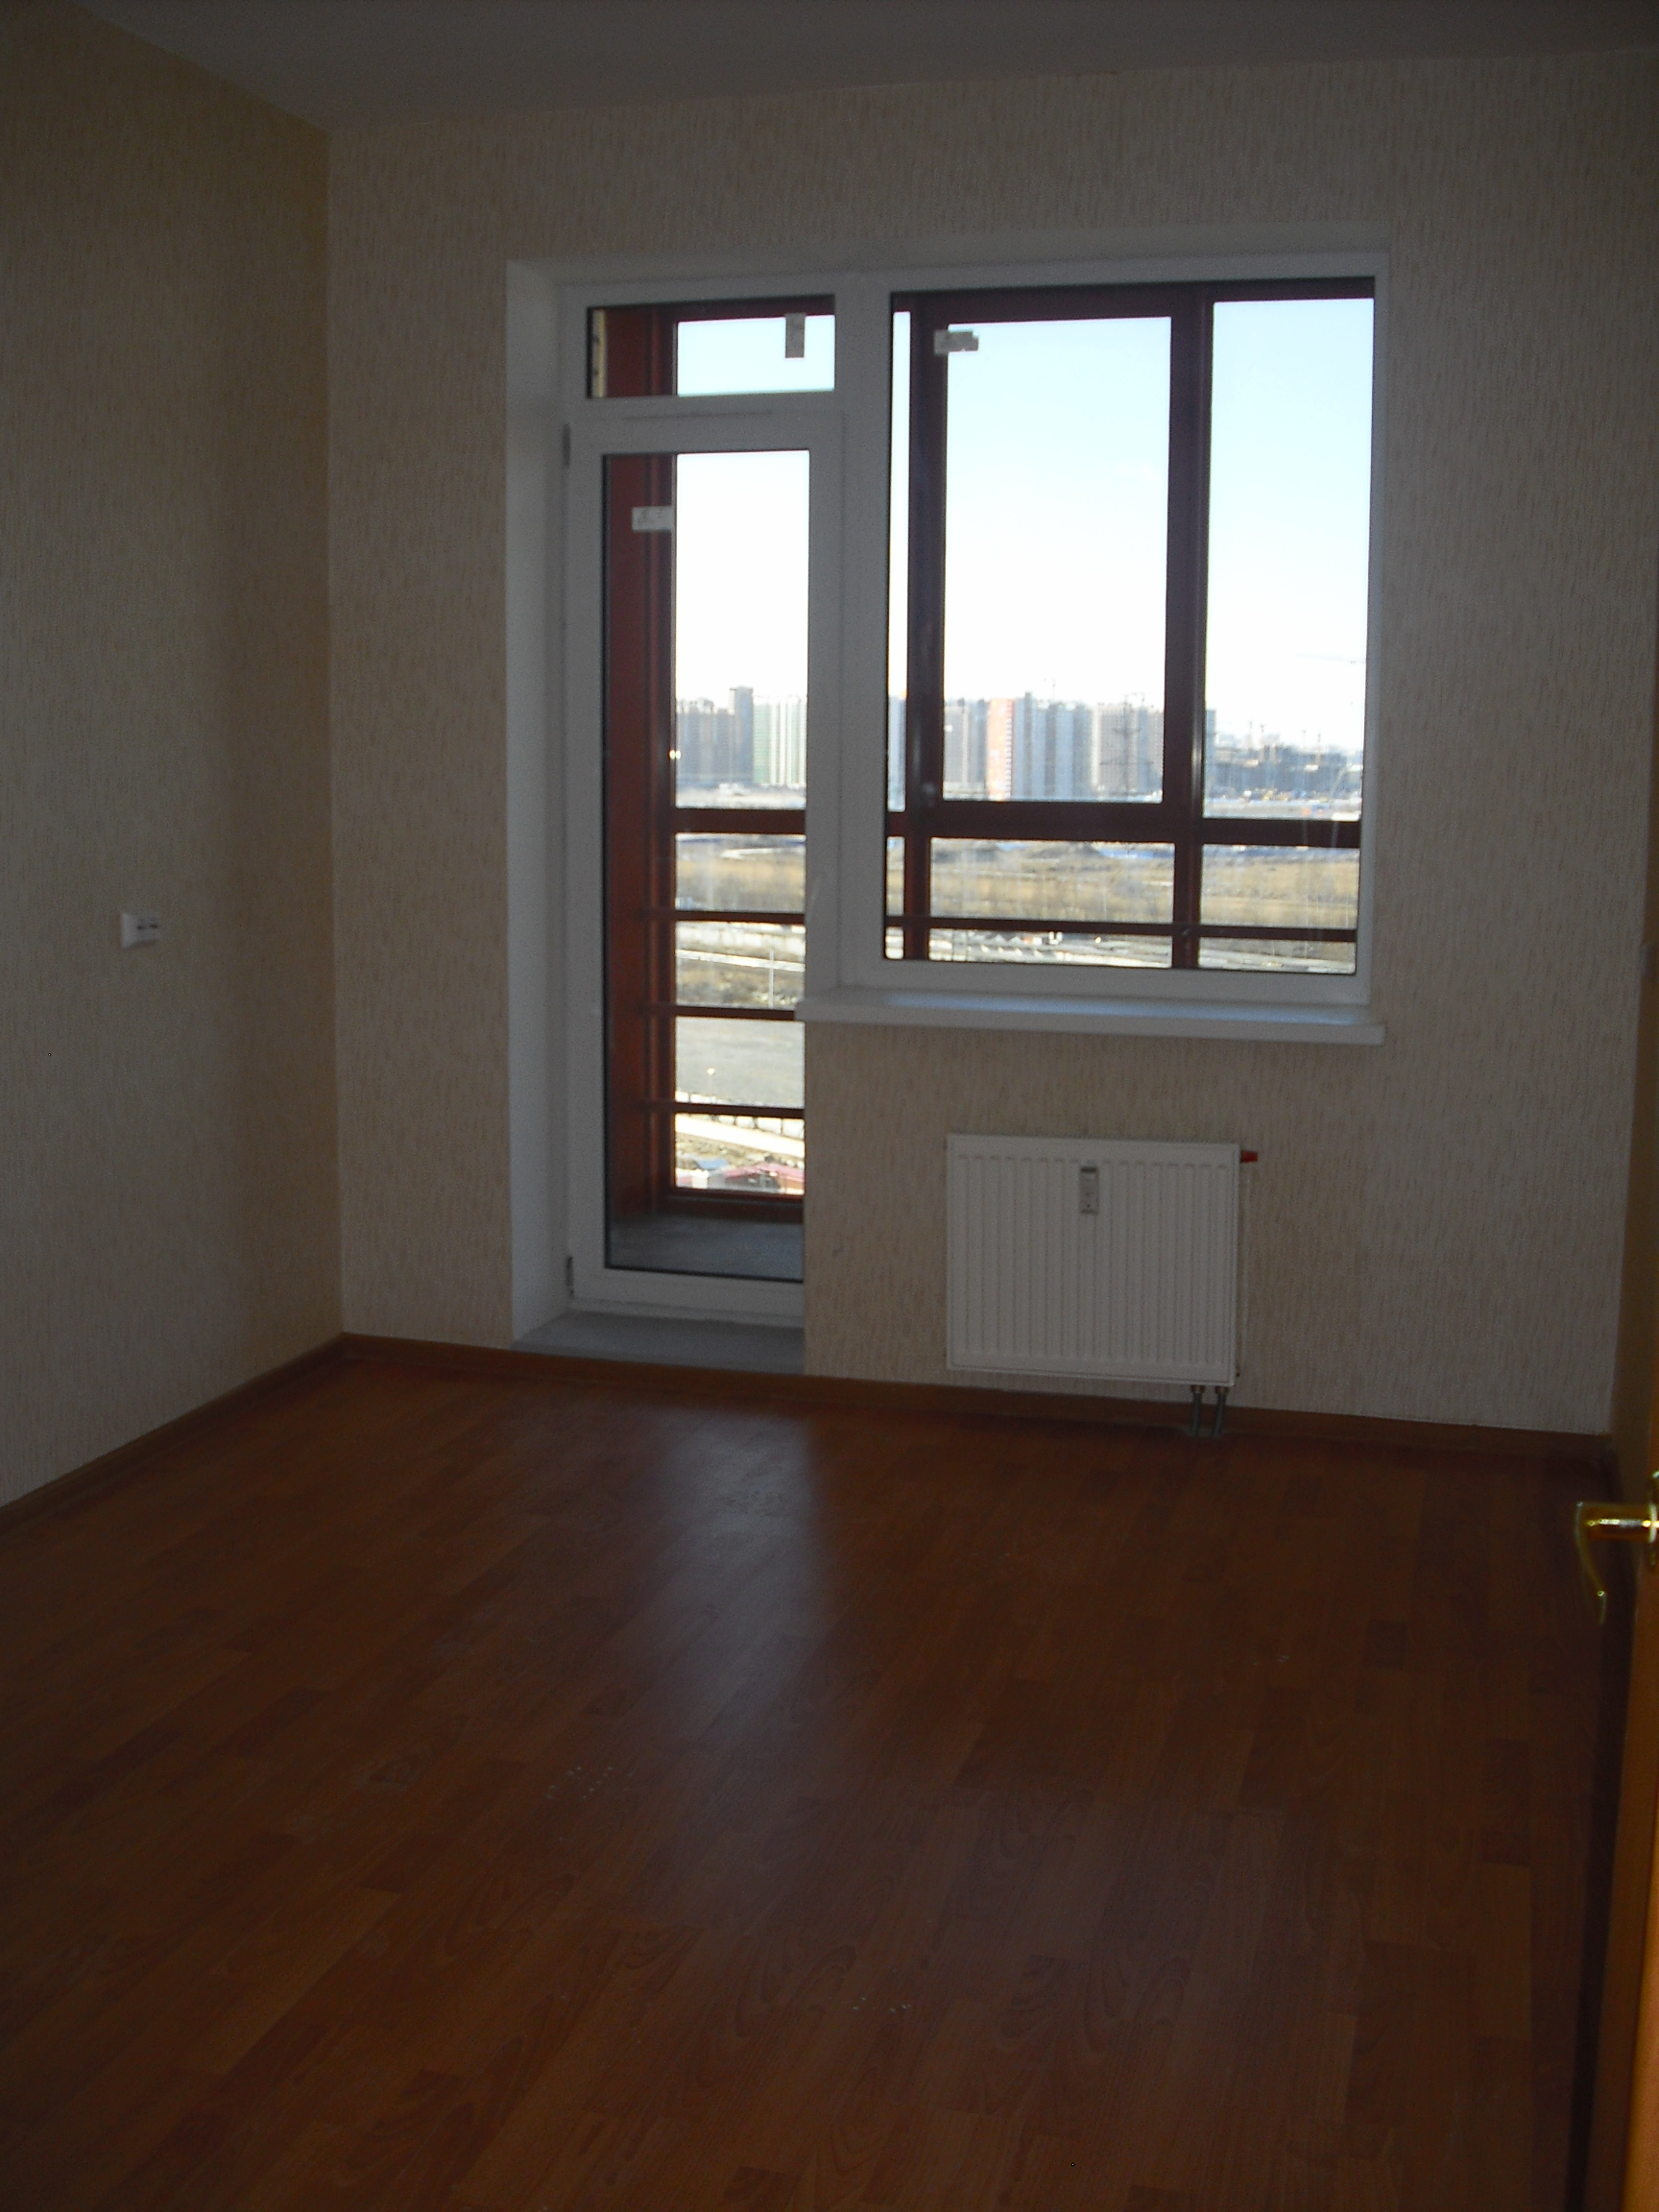 Снять 1 комнатную квартиру в ленинском районе без мебели